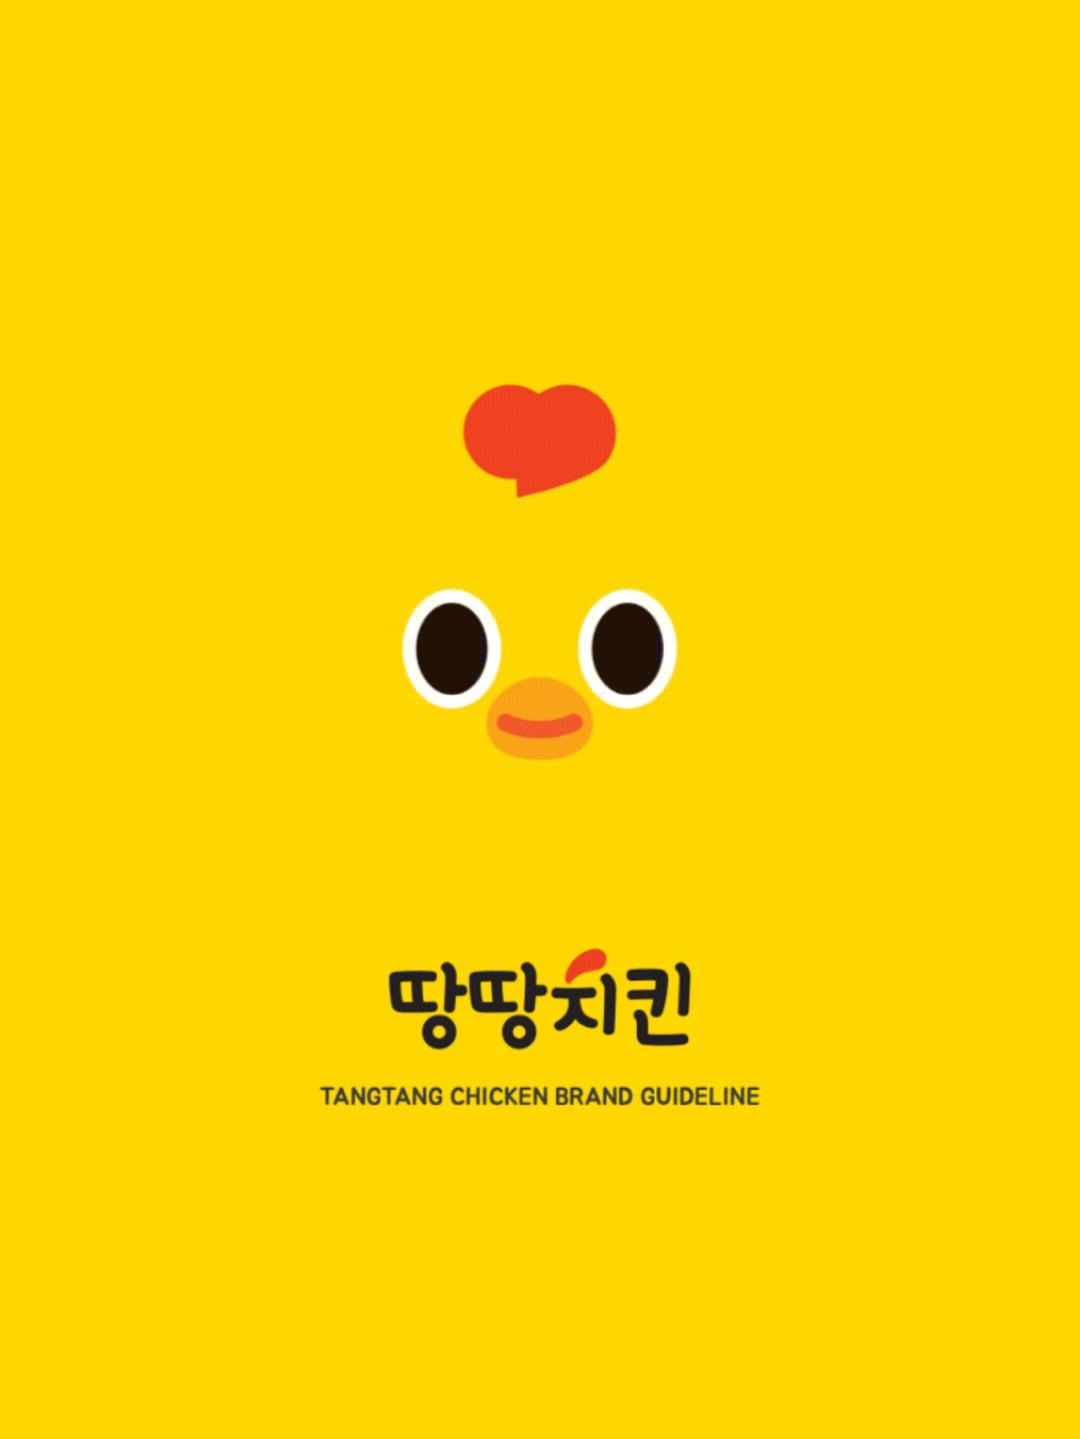 韩国炸鸡品牌vi设计设计案例分享78